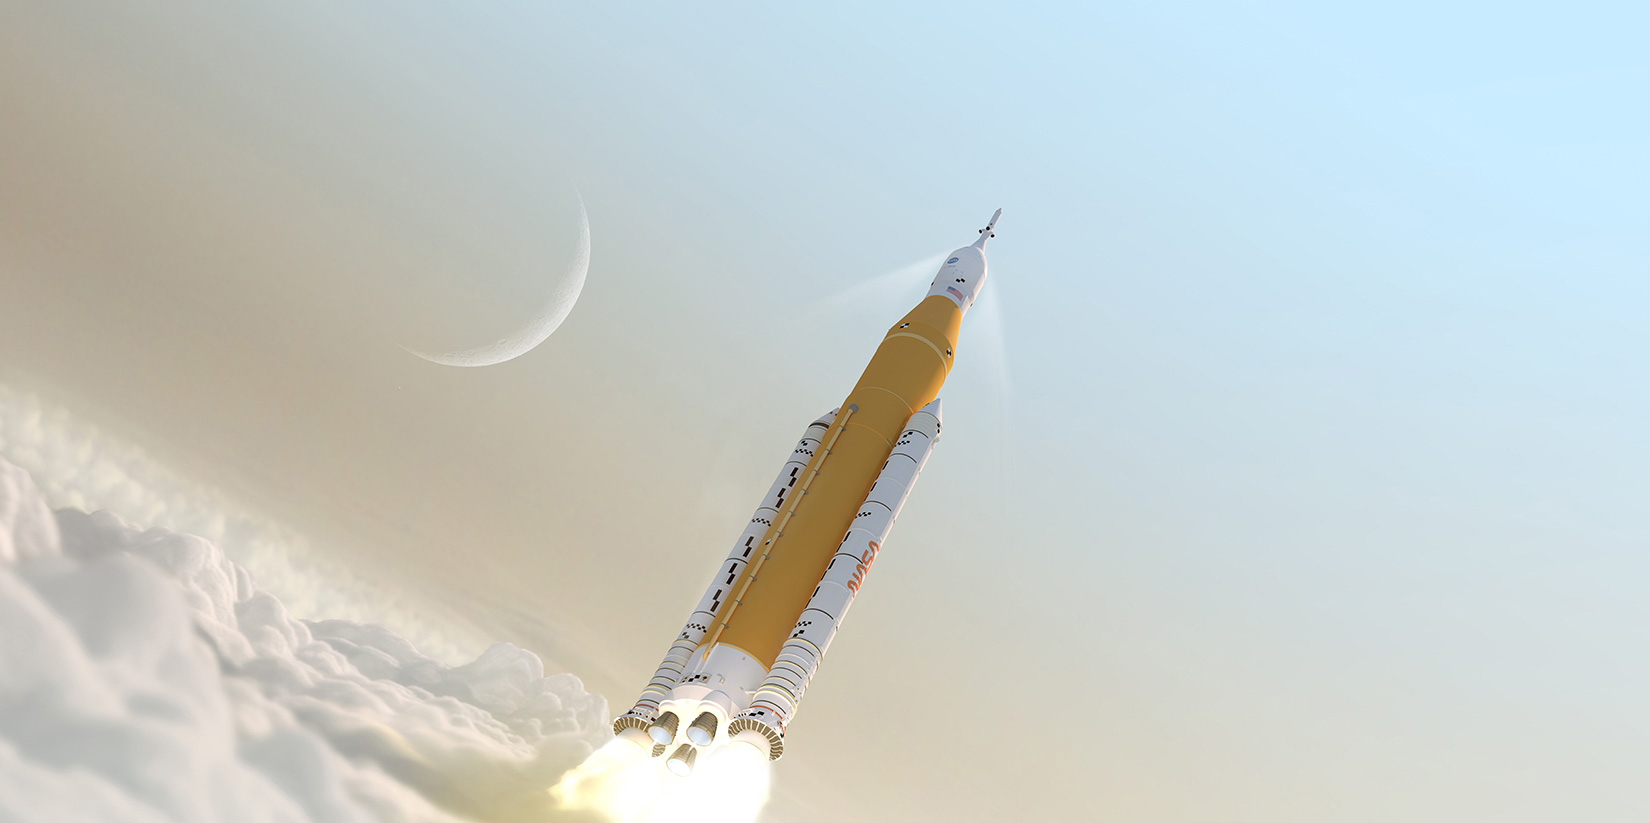 illustration of SLS rocket soaring above clouds